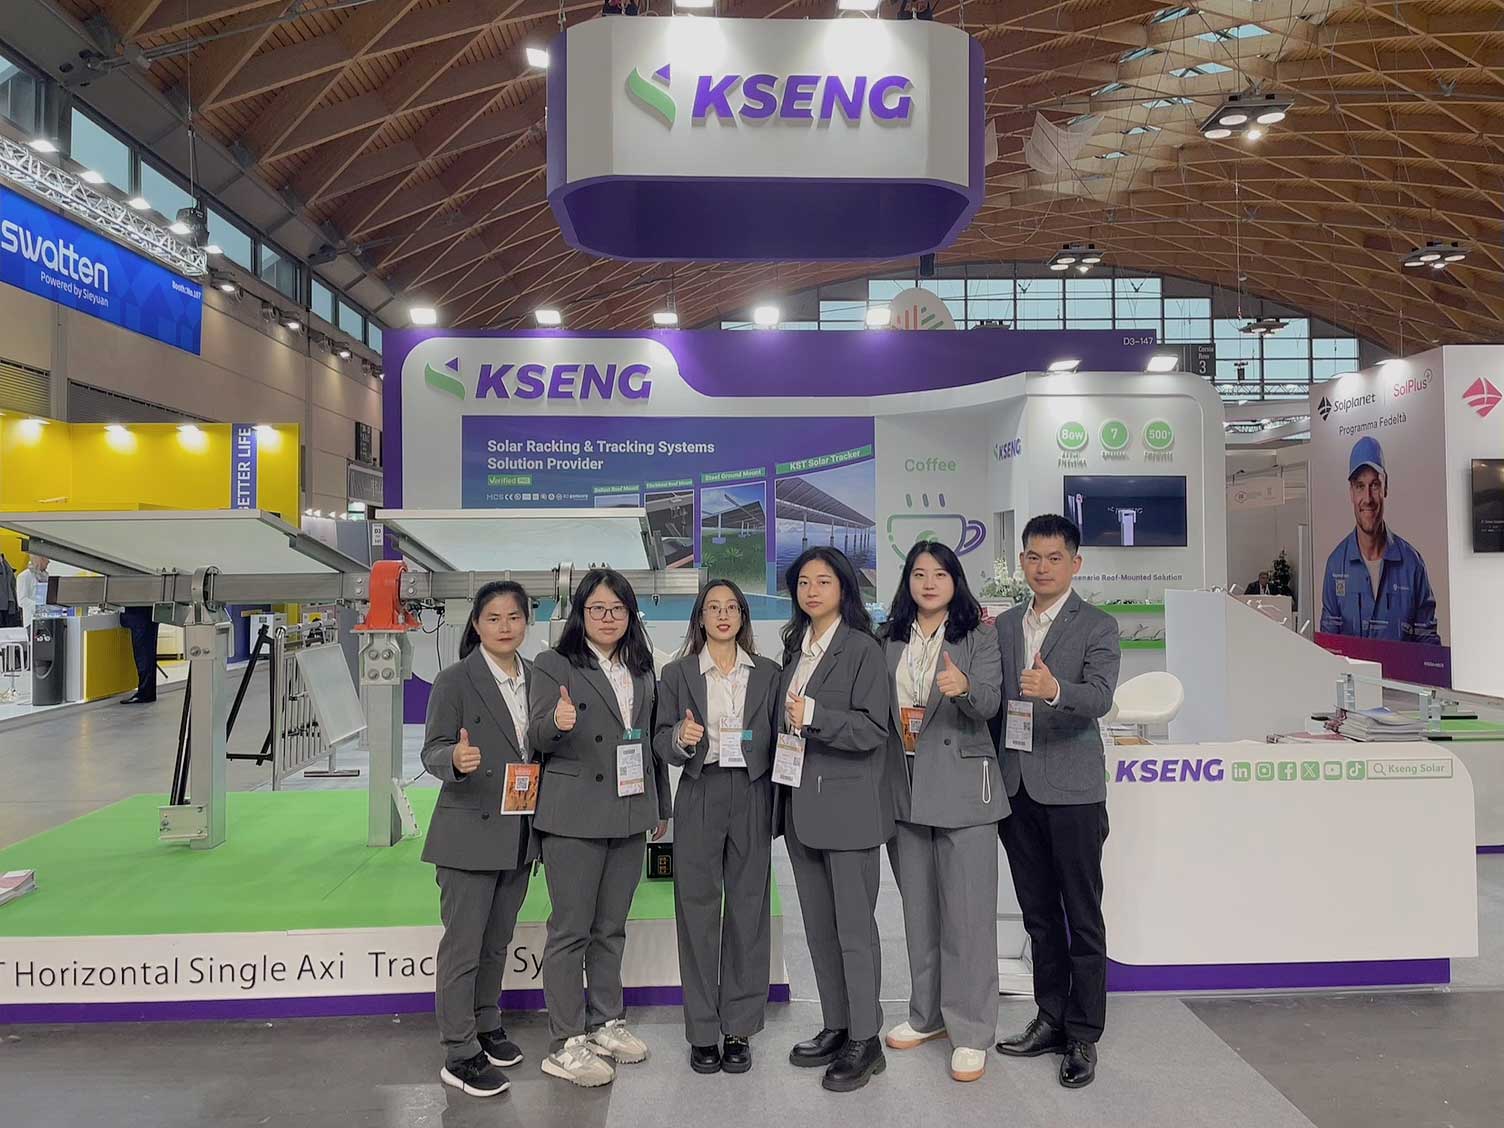 Kseng Solar fa una notevole impressione a cinque fiere in Europa con le sue innovative soluzioni di racking solare